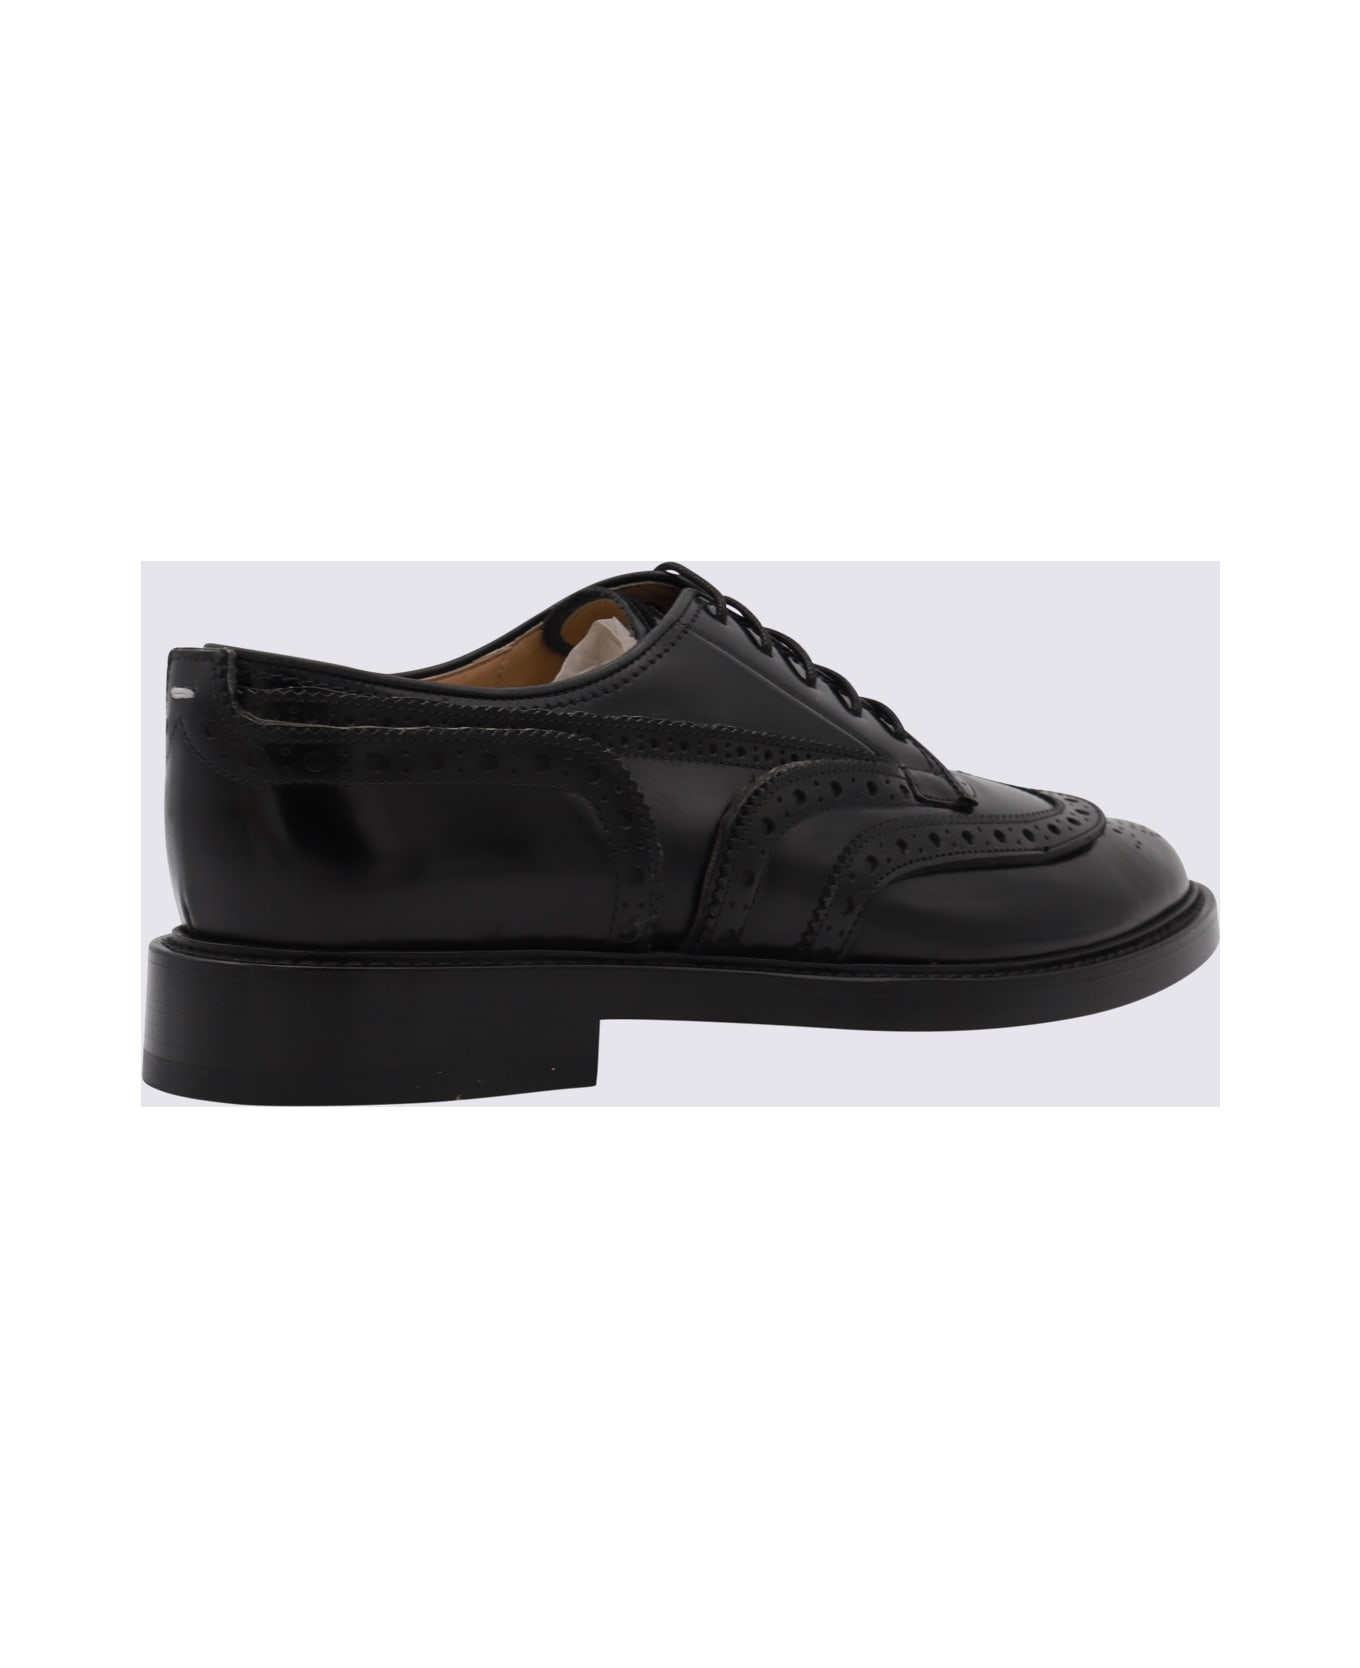 Maison Margiela Black Leather Tabi Lace Up Shoes - Black